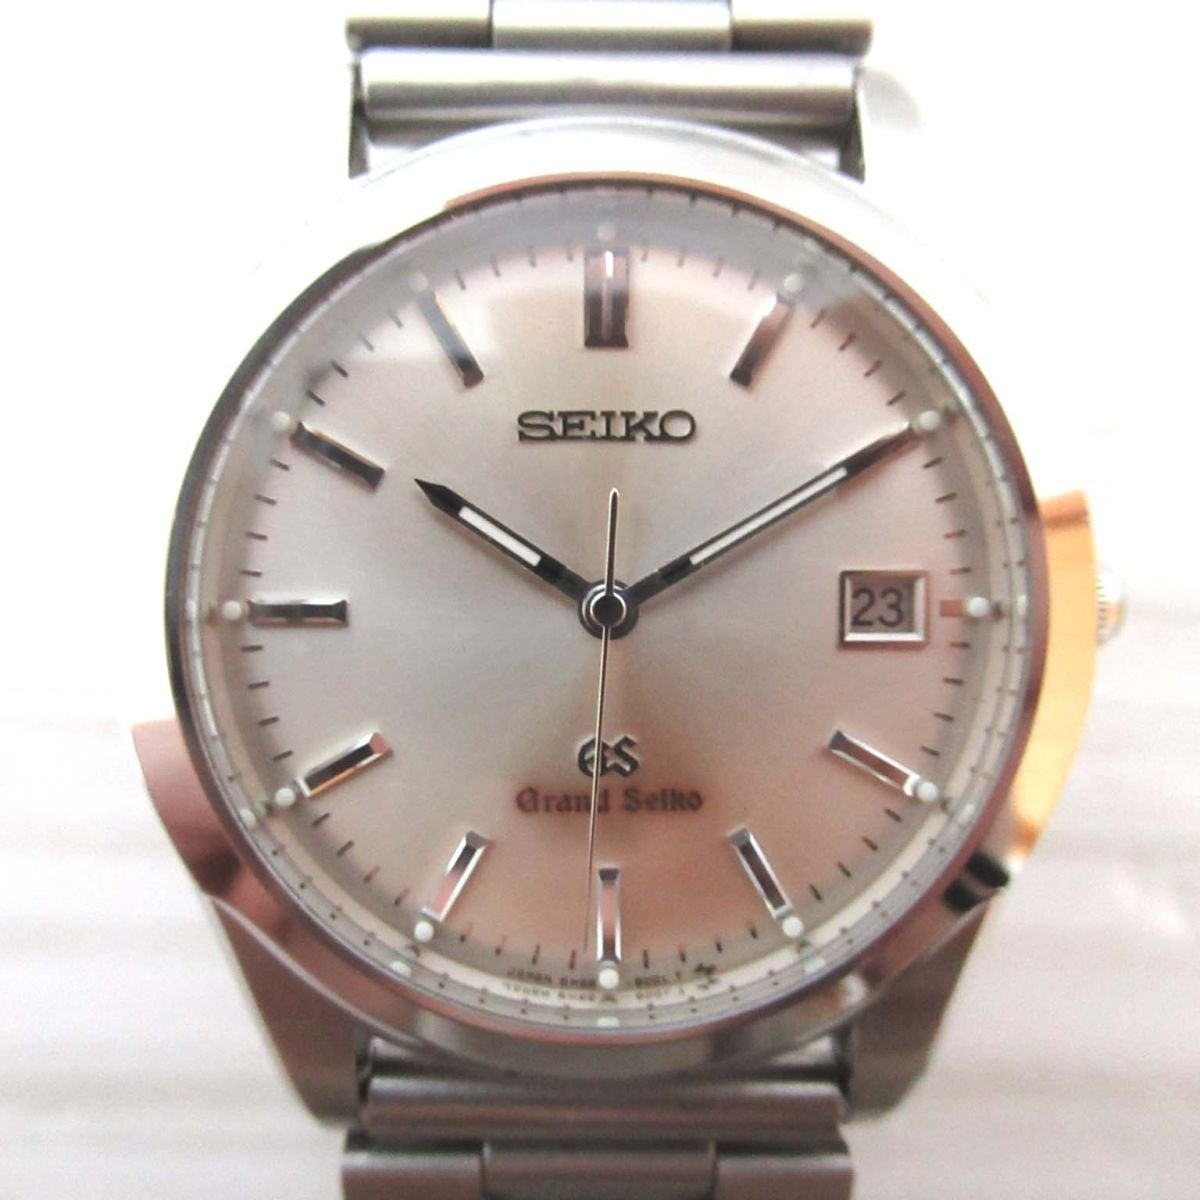 美品 SEIKO GS グランドセイコー 3針式+デイト クォーツ ウォッチ 腕時計 8N65-8000 シルバー文字盤 C0504